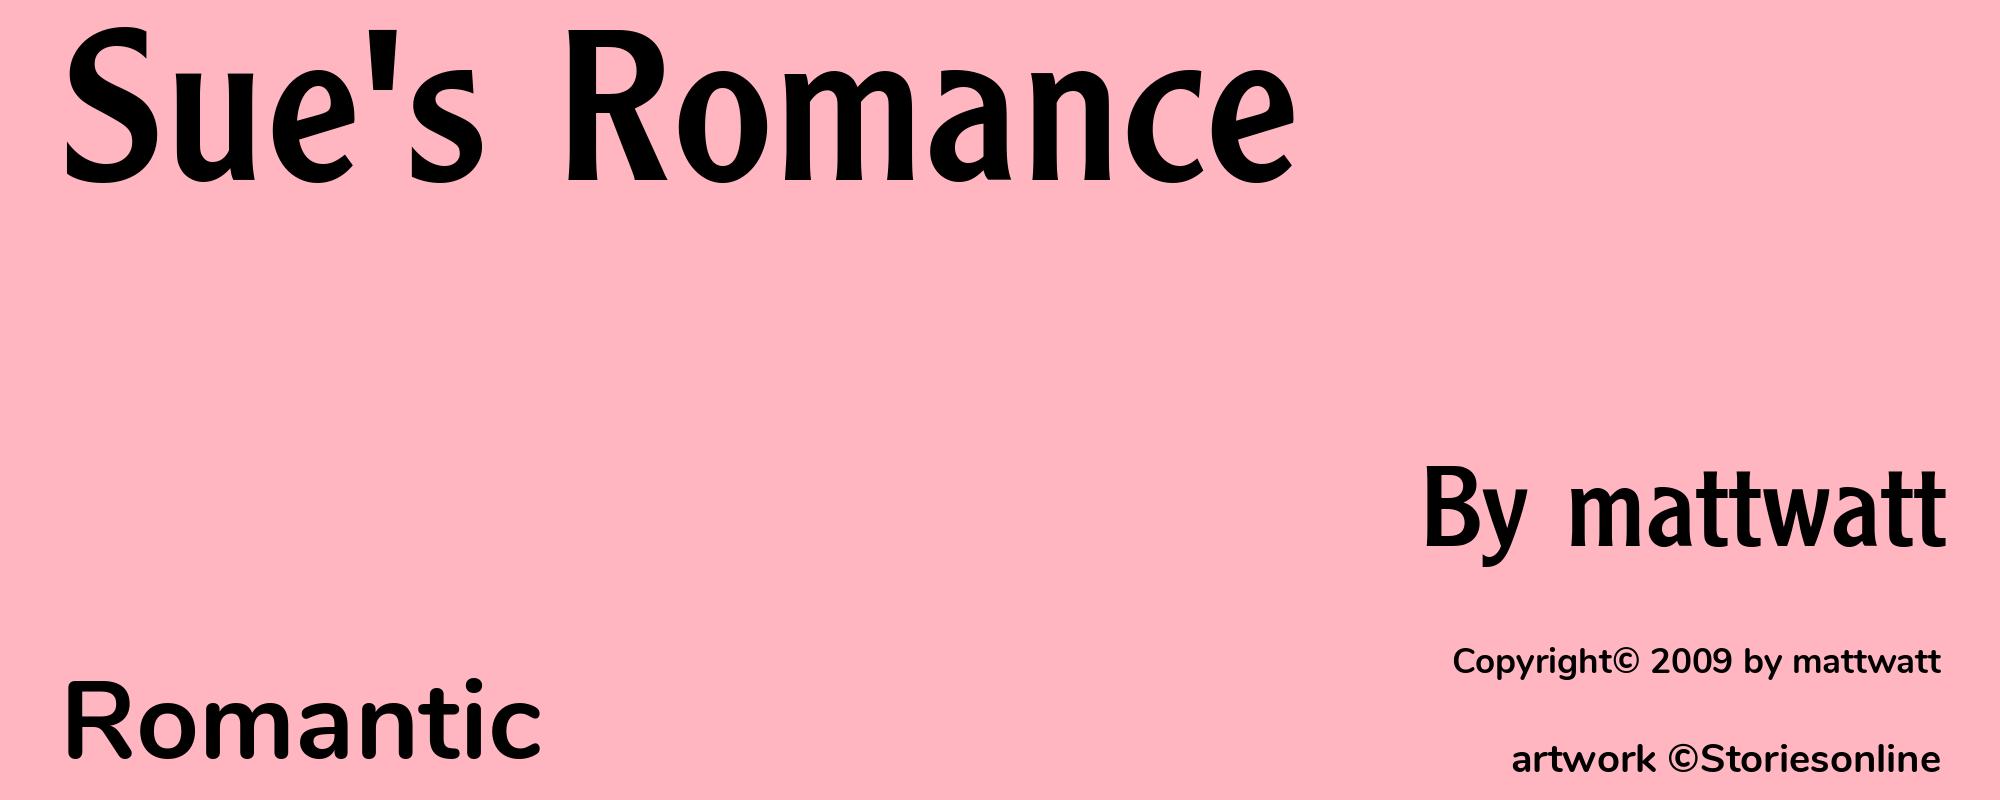 Sue's Romance - Cover